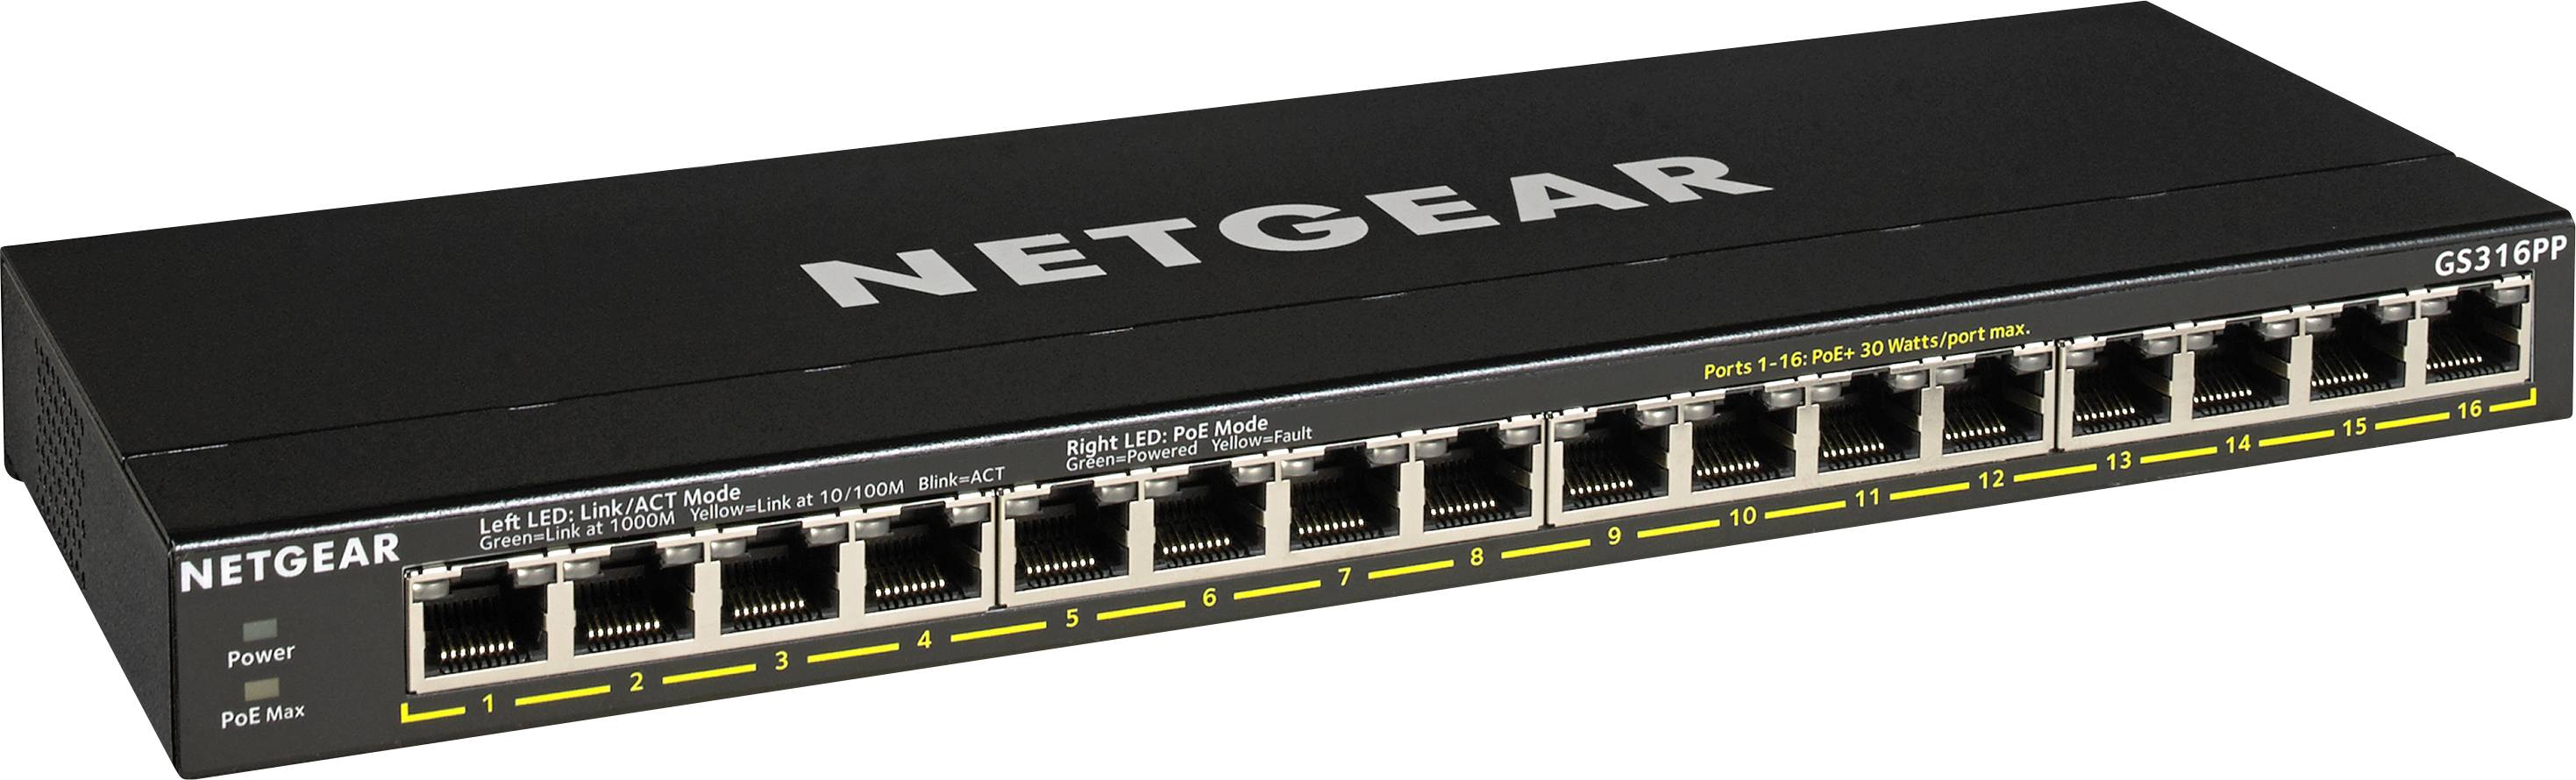 NETGEAR GS316P unmngd 16port Gigabit Ethern PoE+Switch, 115W PoE+bdgt, fanless, plug/play, expnd PoE